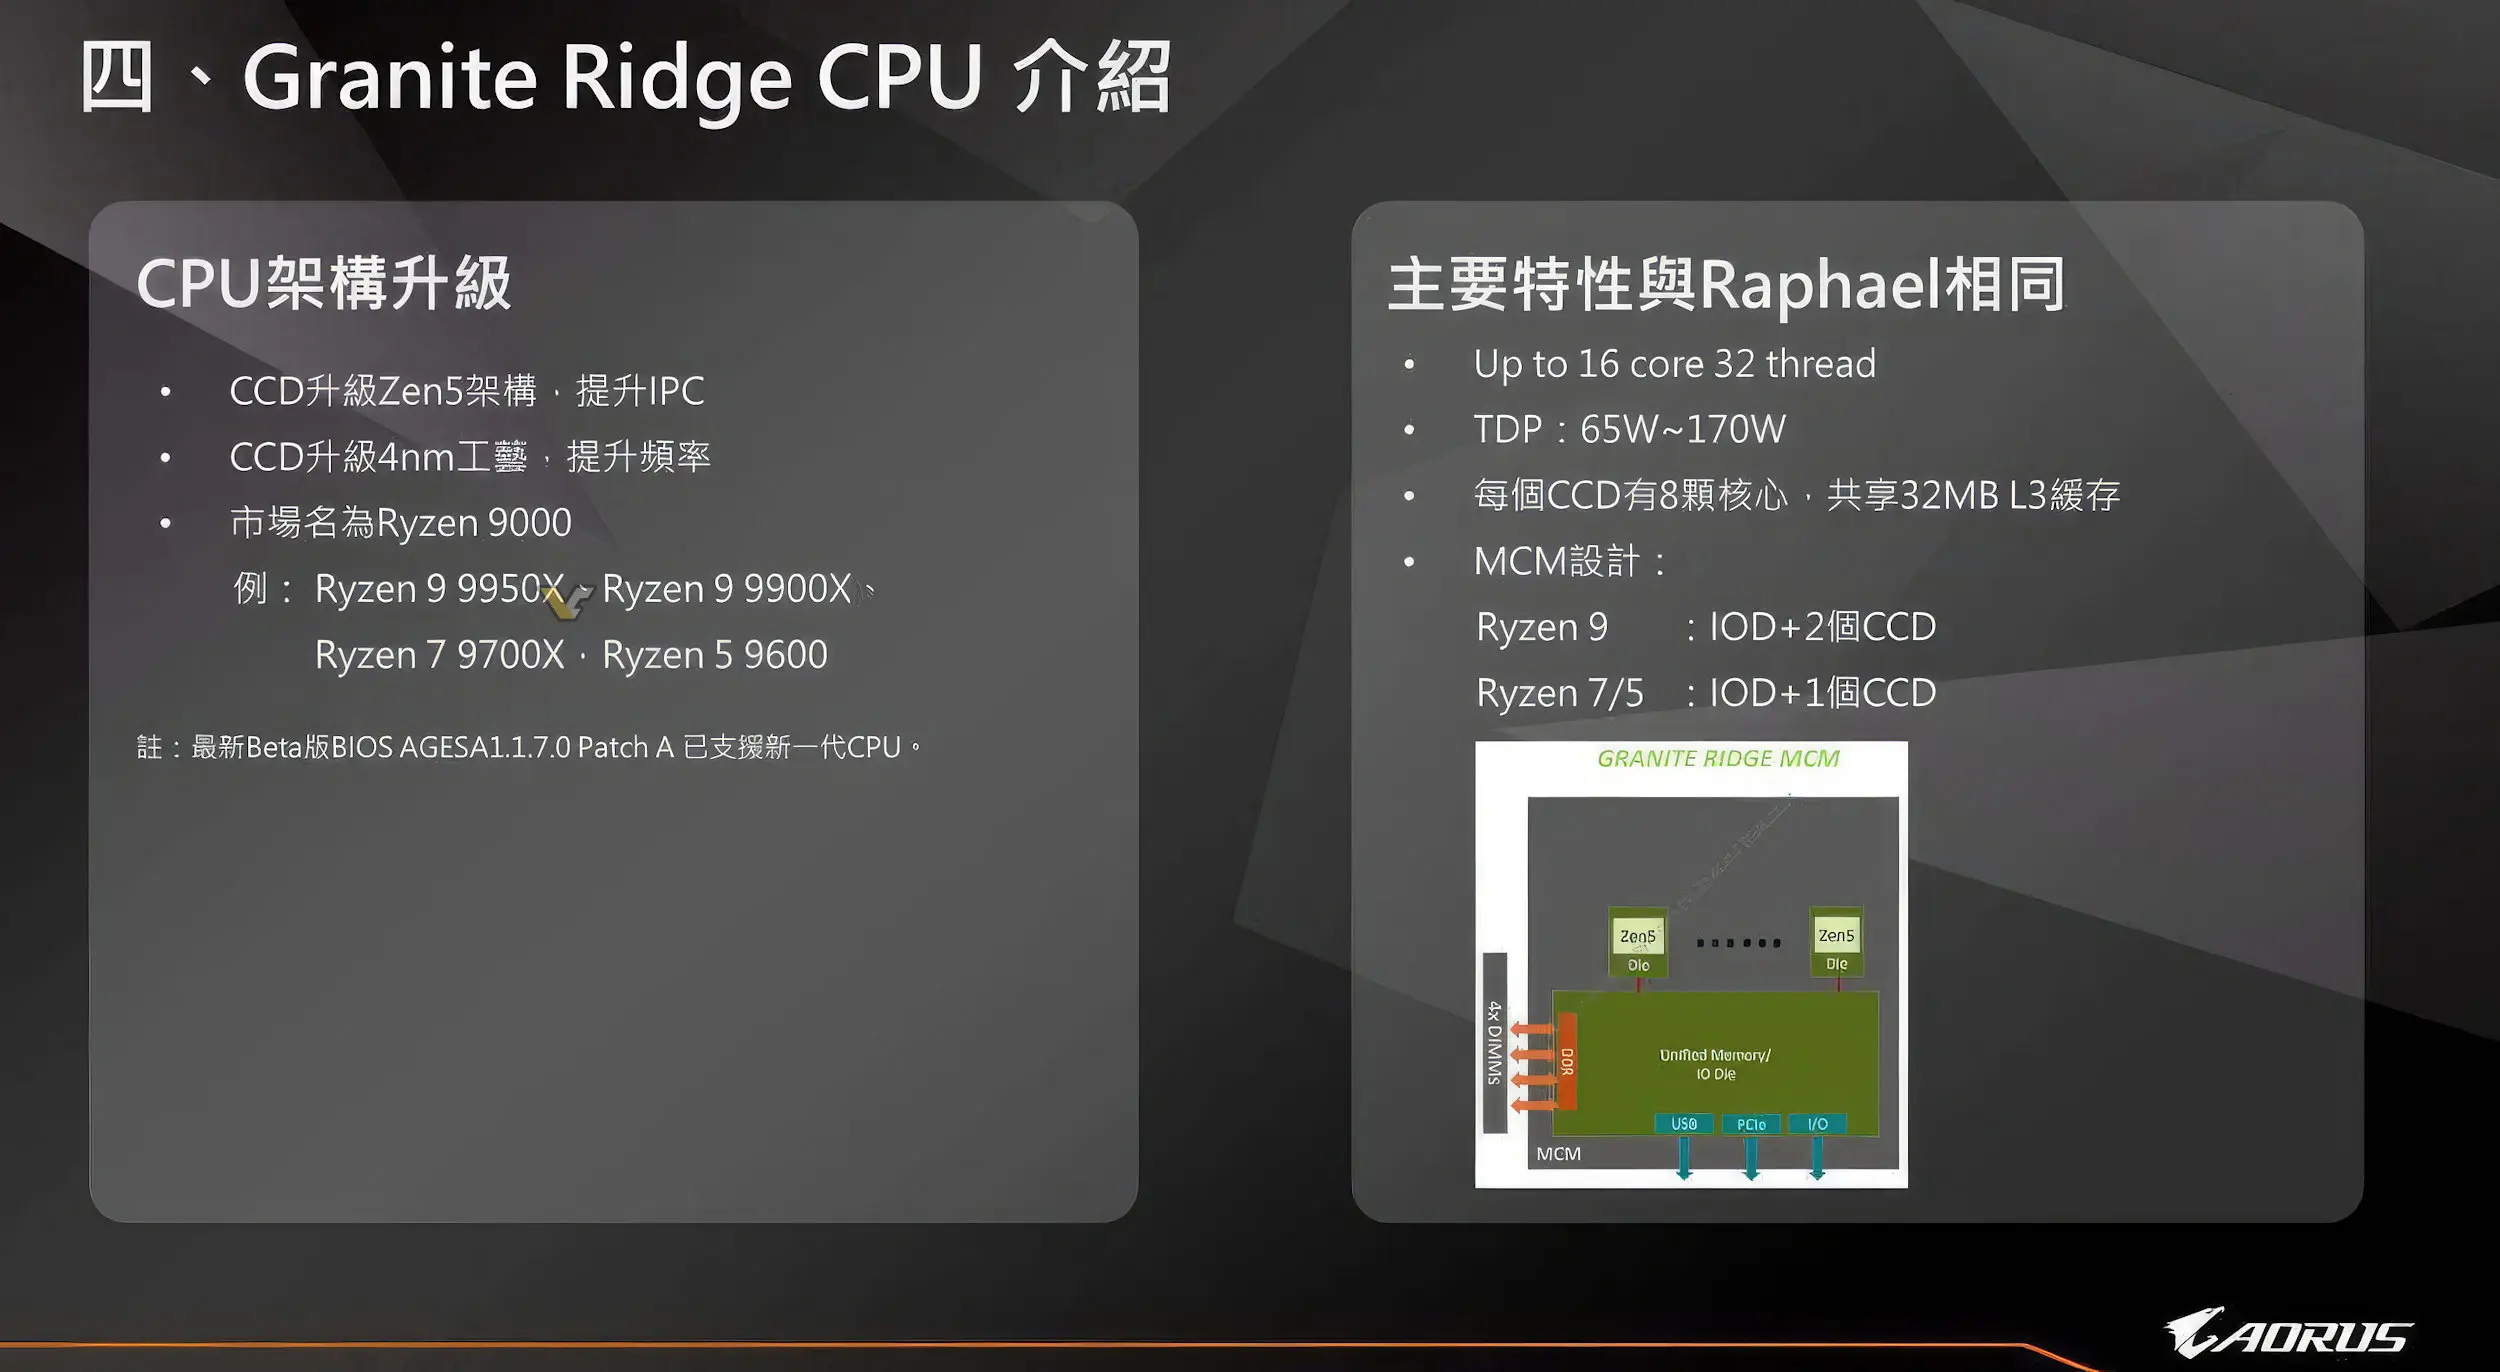 اطلاعات فاش شده از مادربرد AORUS X870 پردازنده پرچمدار AMD Ryzen 9  اطلاعات فاش شده از مادربرد X870 تراشه پرچمدار Ryzen 9 9950X را تأیید می‌کند